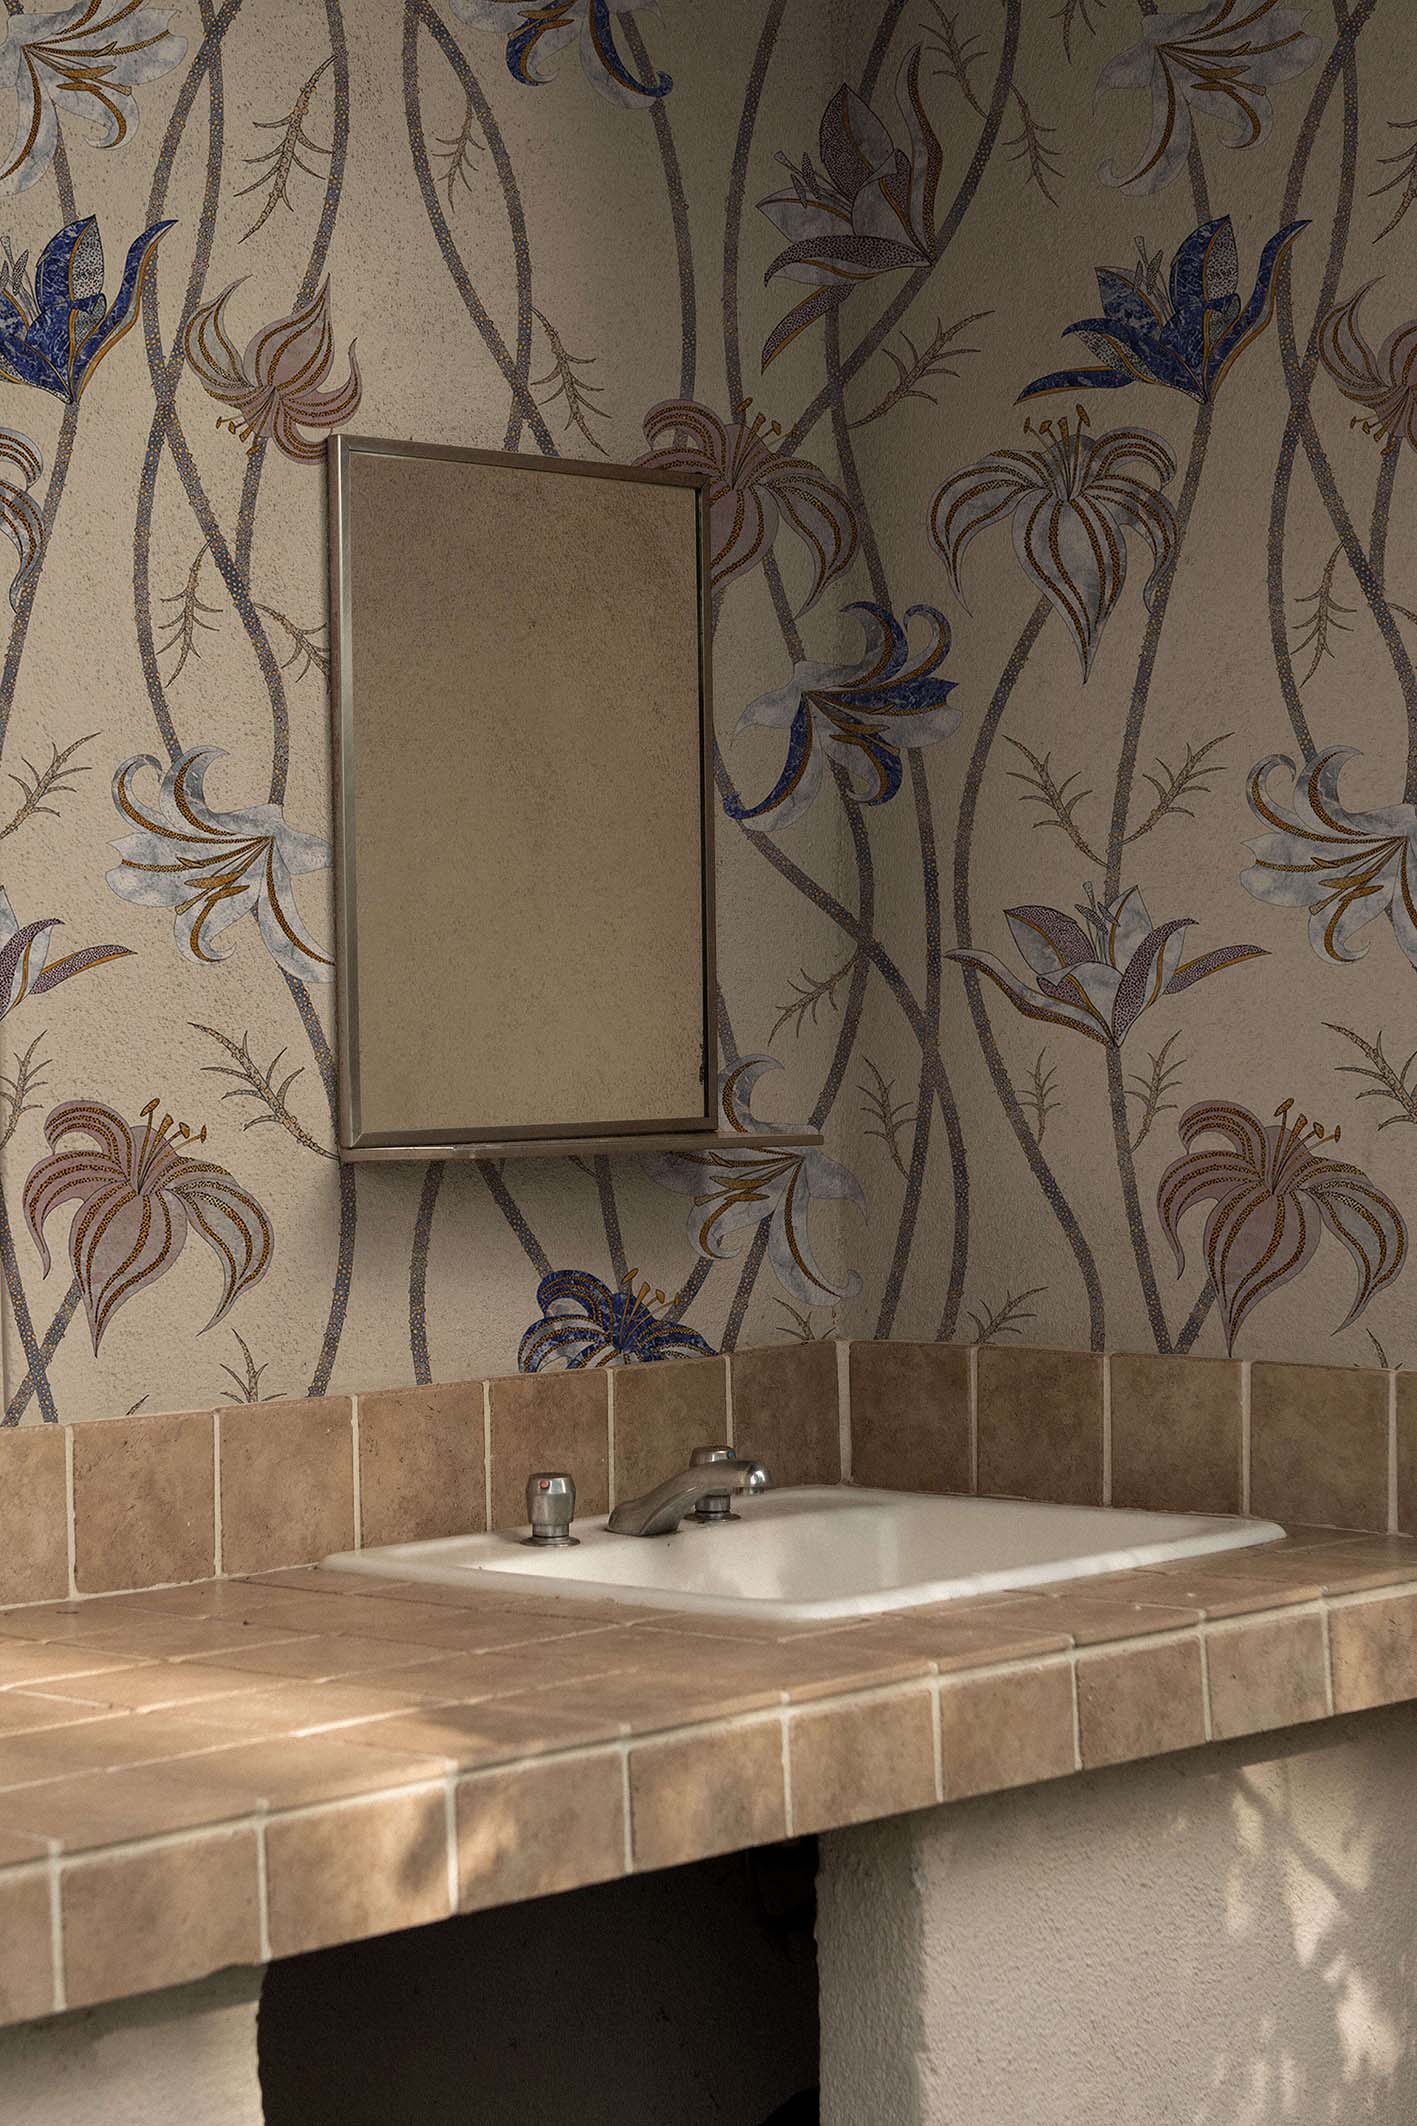 Fiori-Caffelatte-MaVoix-wallpaper-wallpaper-bathroom-decor-Collezione-Racconti